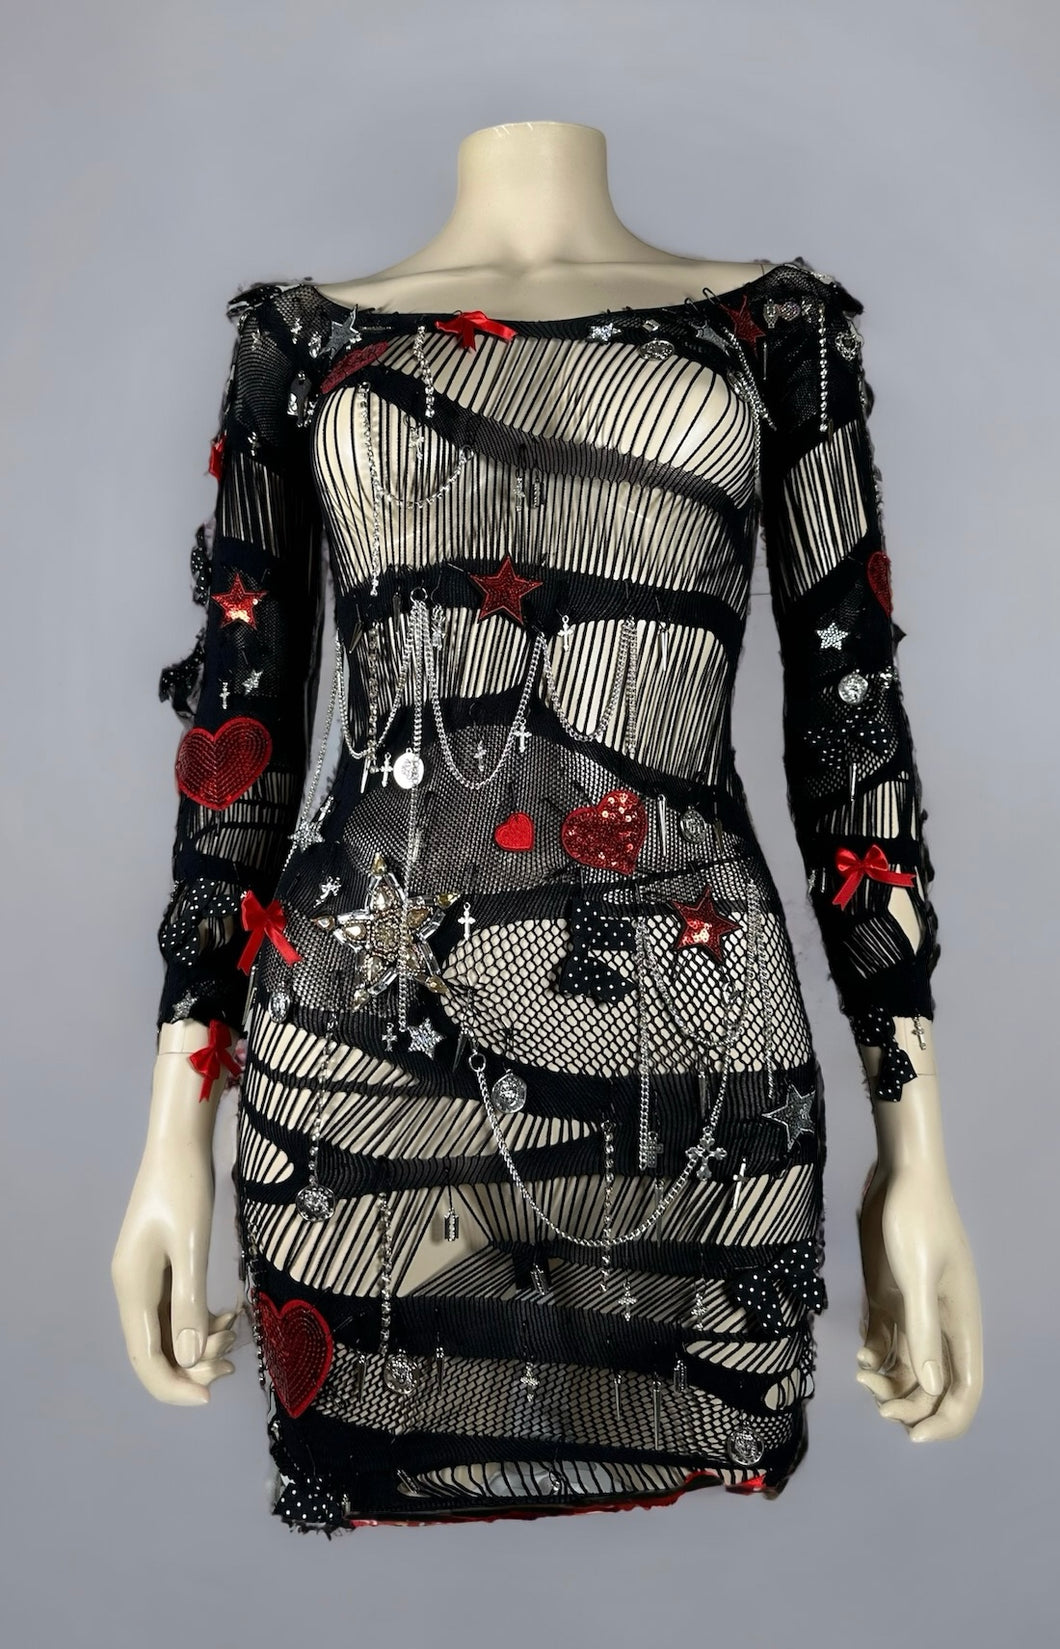 TELLTALE HEART - Couture Punk Mesh Dress